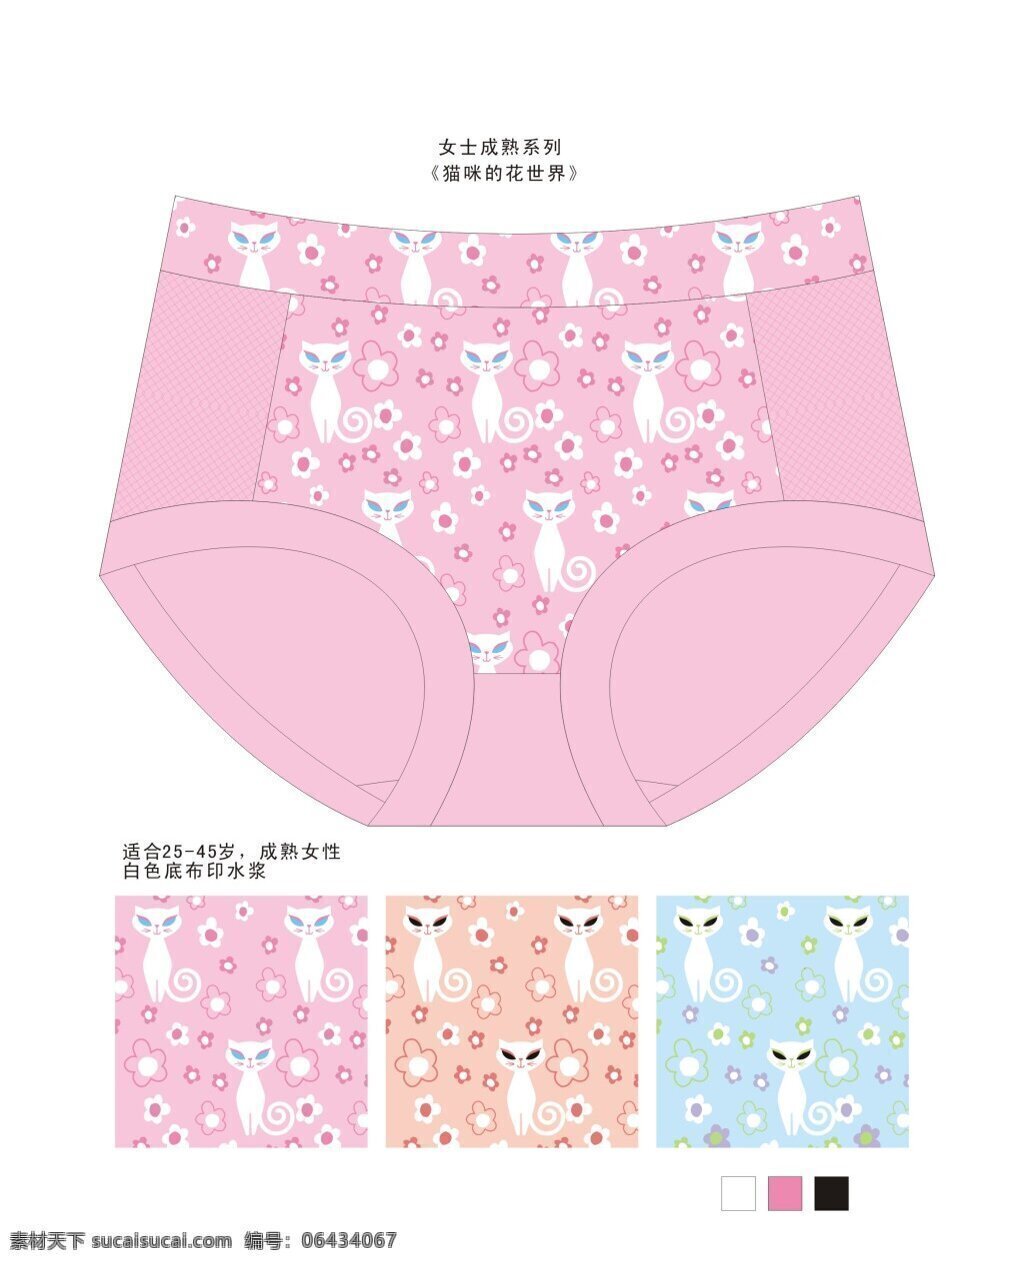 女士 裤 型 猫咪 花 世界 卡通猫咪 花朵 女士内裤 印花图案设计 配色